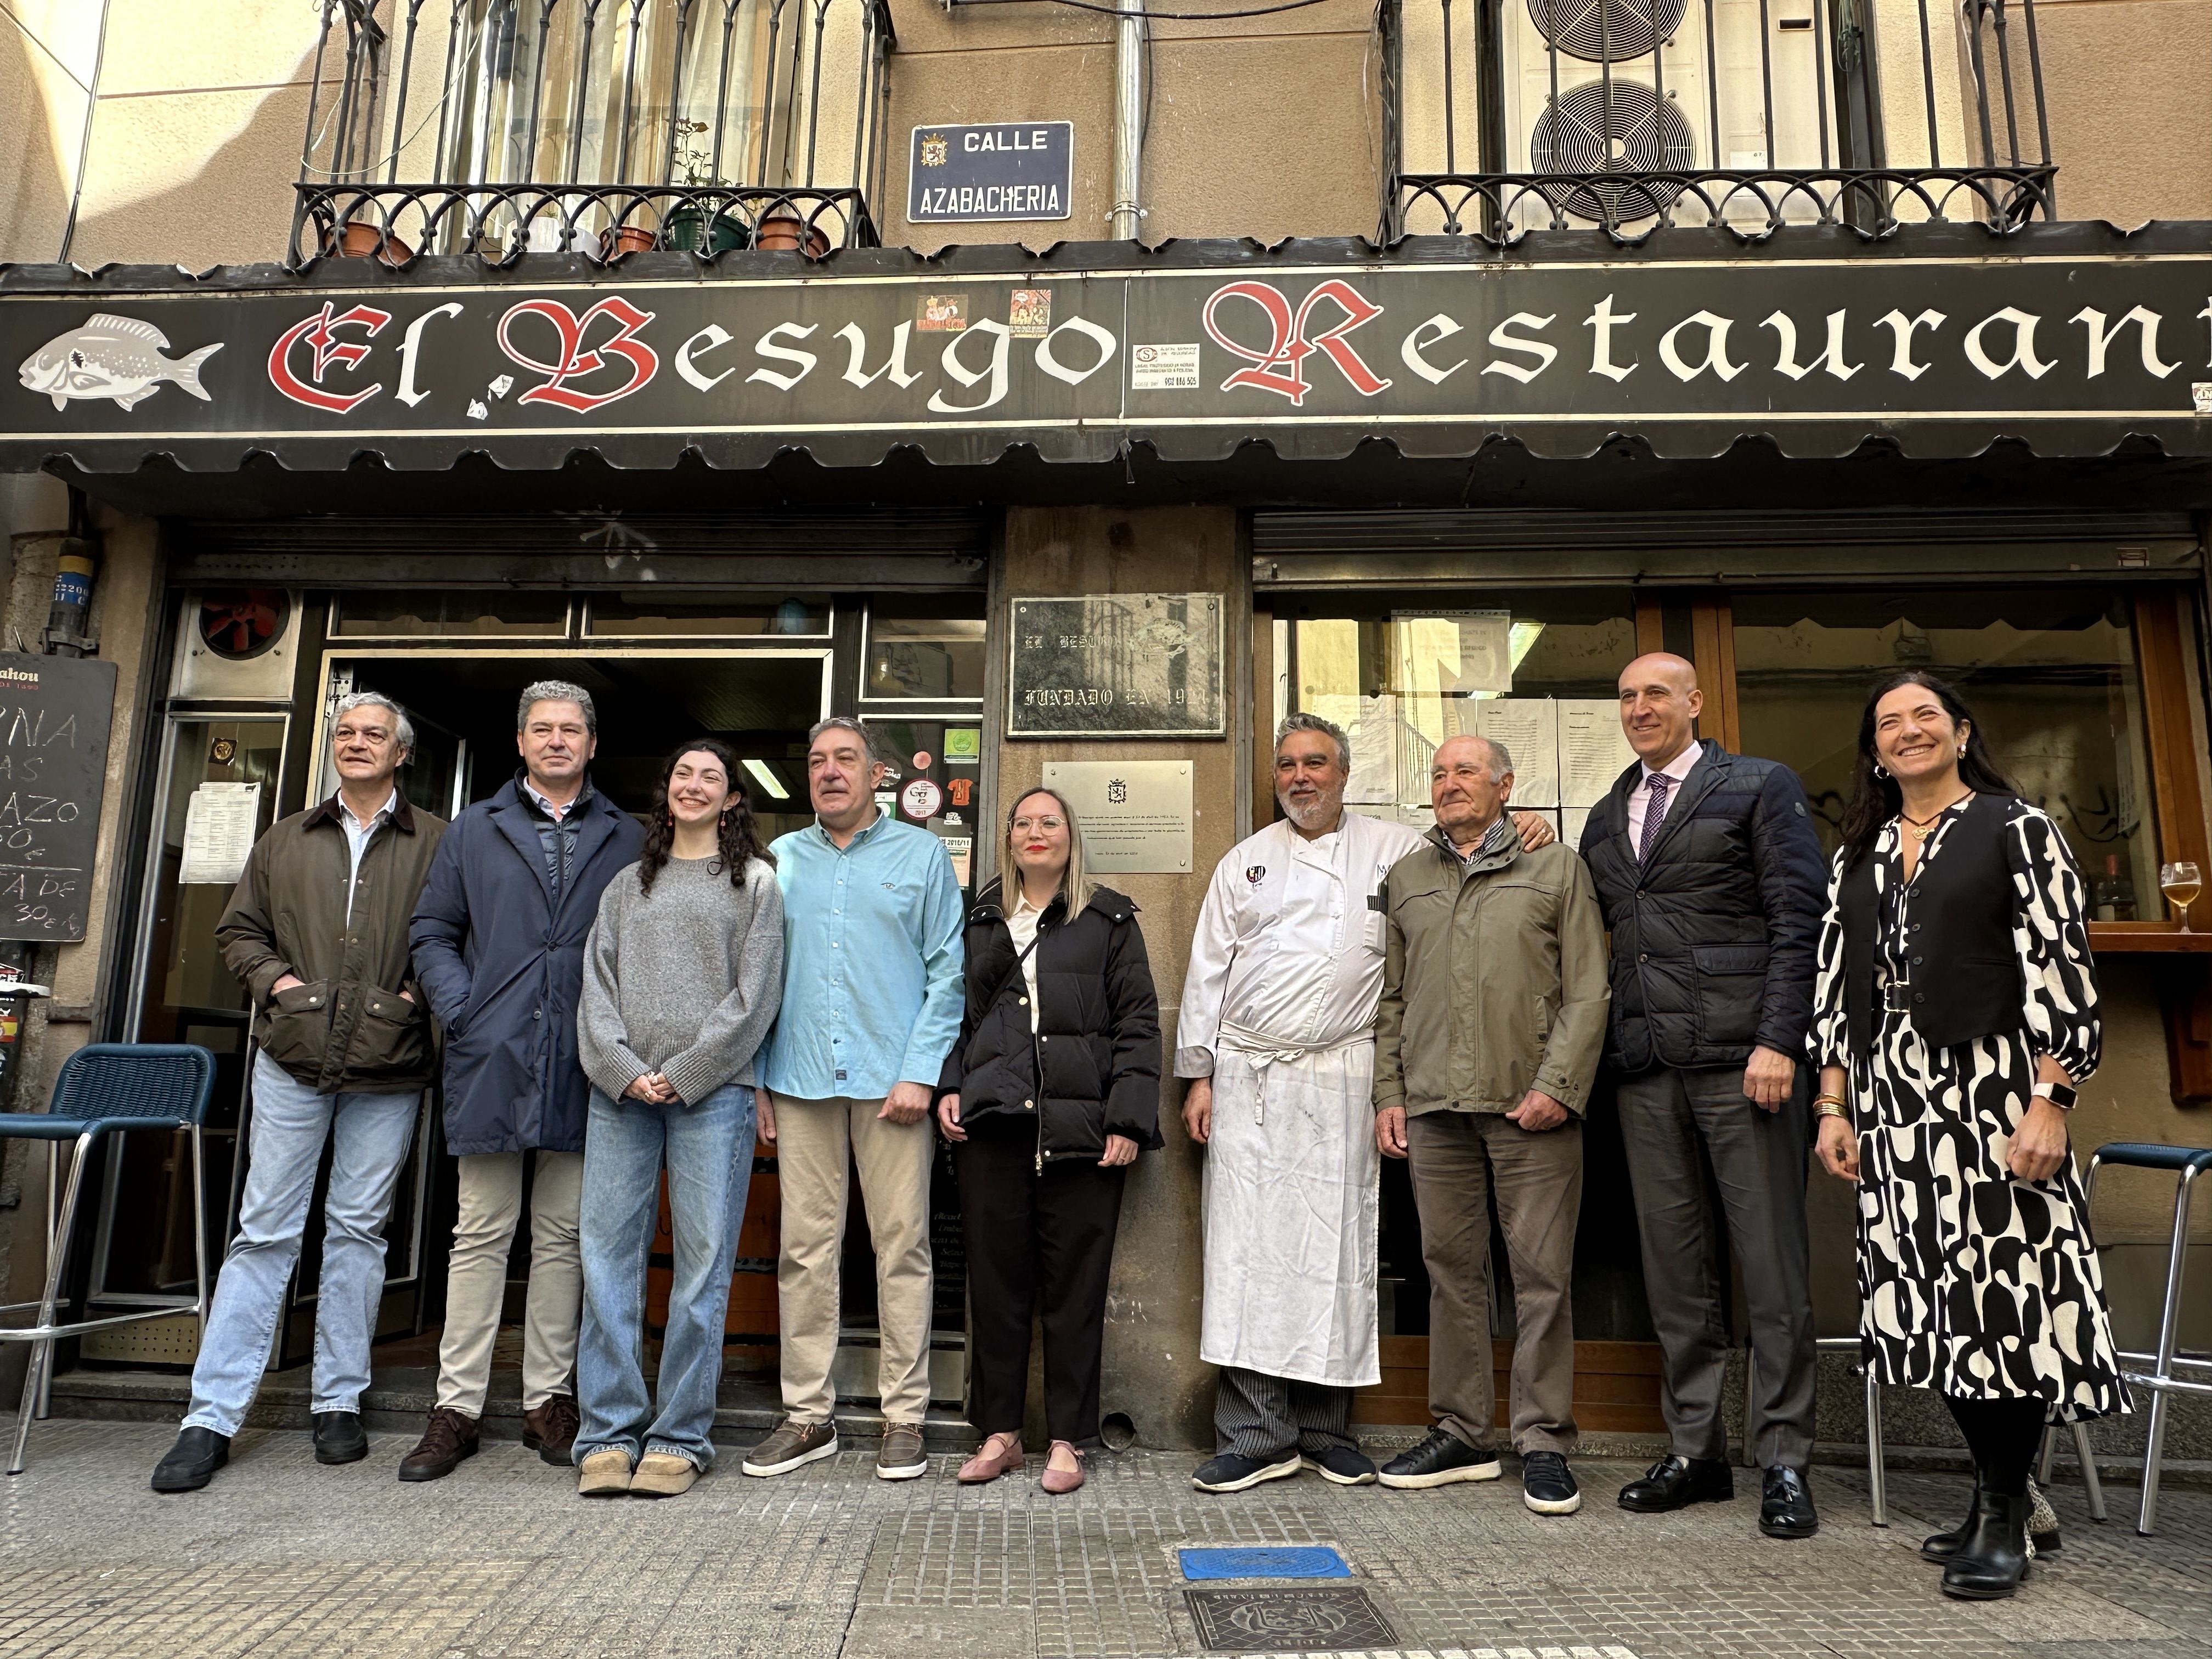 El alcalde José Antonio Diez junto a la familia propietaria del restaurante centenario El Besugo. | L.N.C.